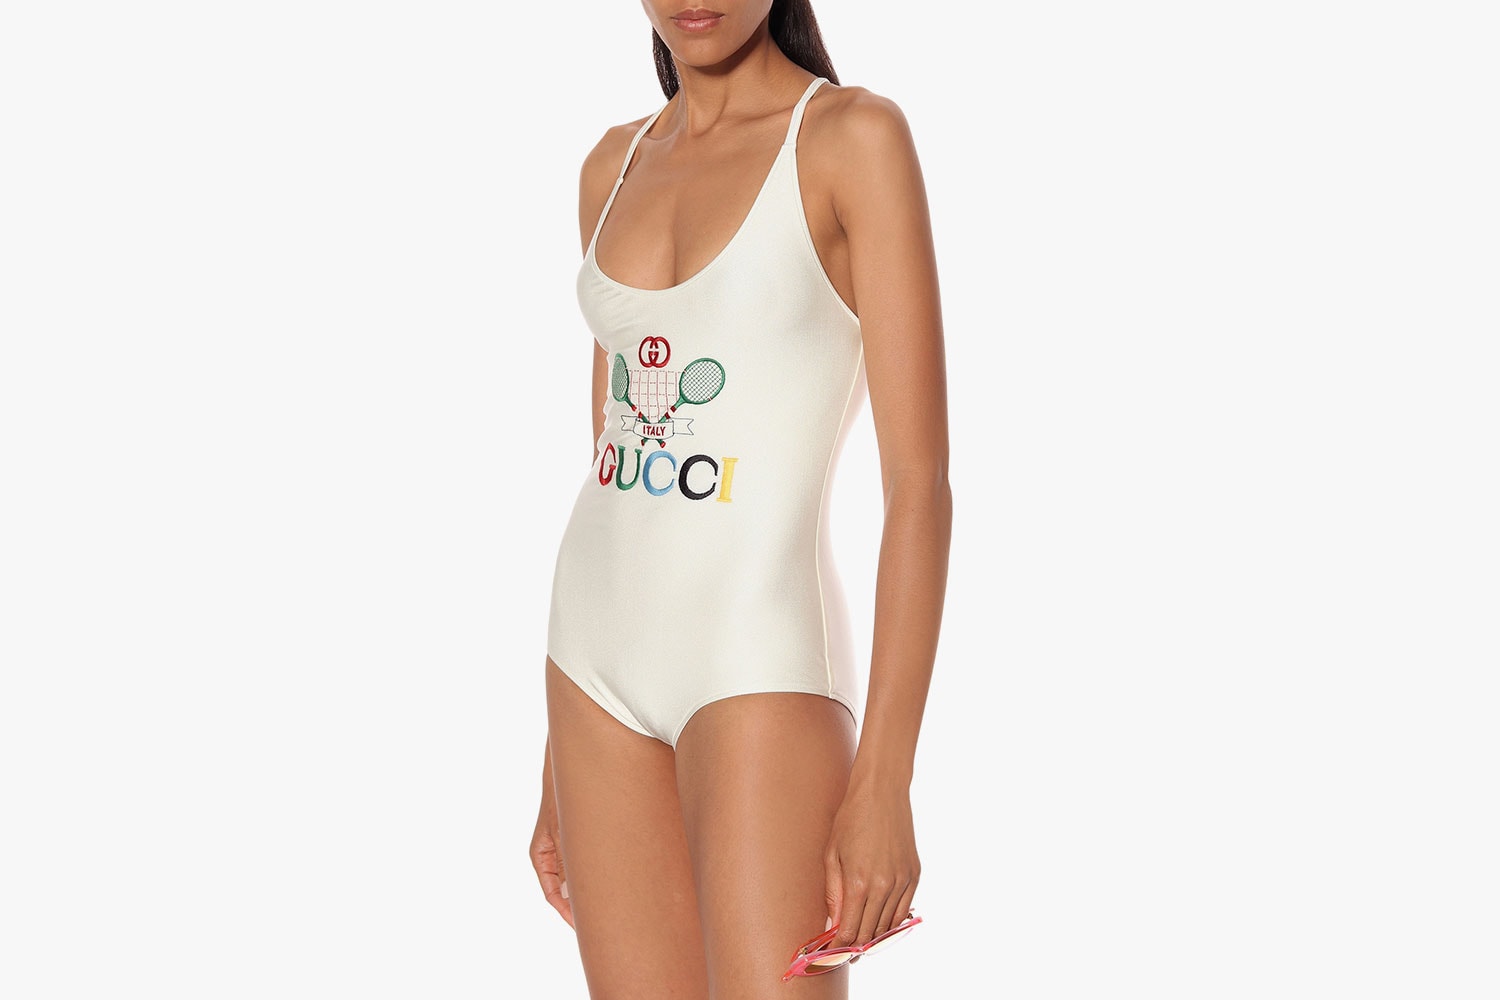 gucci swimsuit one piece swimwear bikini alesandro michele mytheresa embroidery tennis